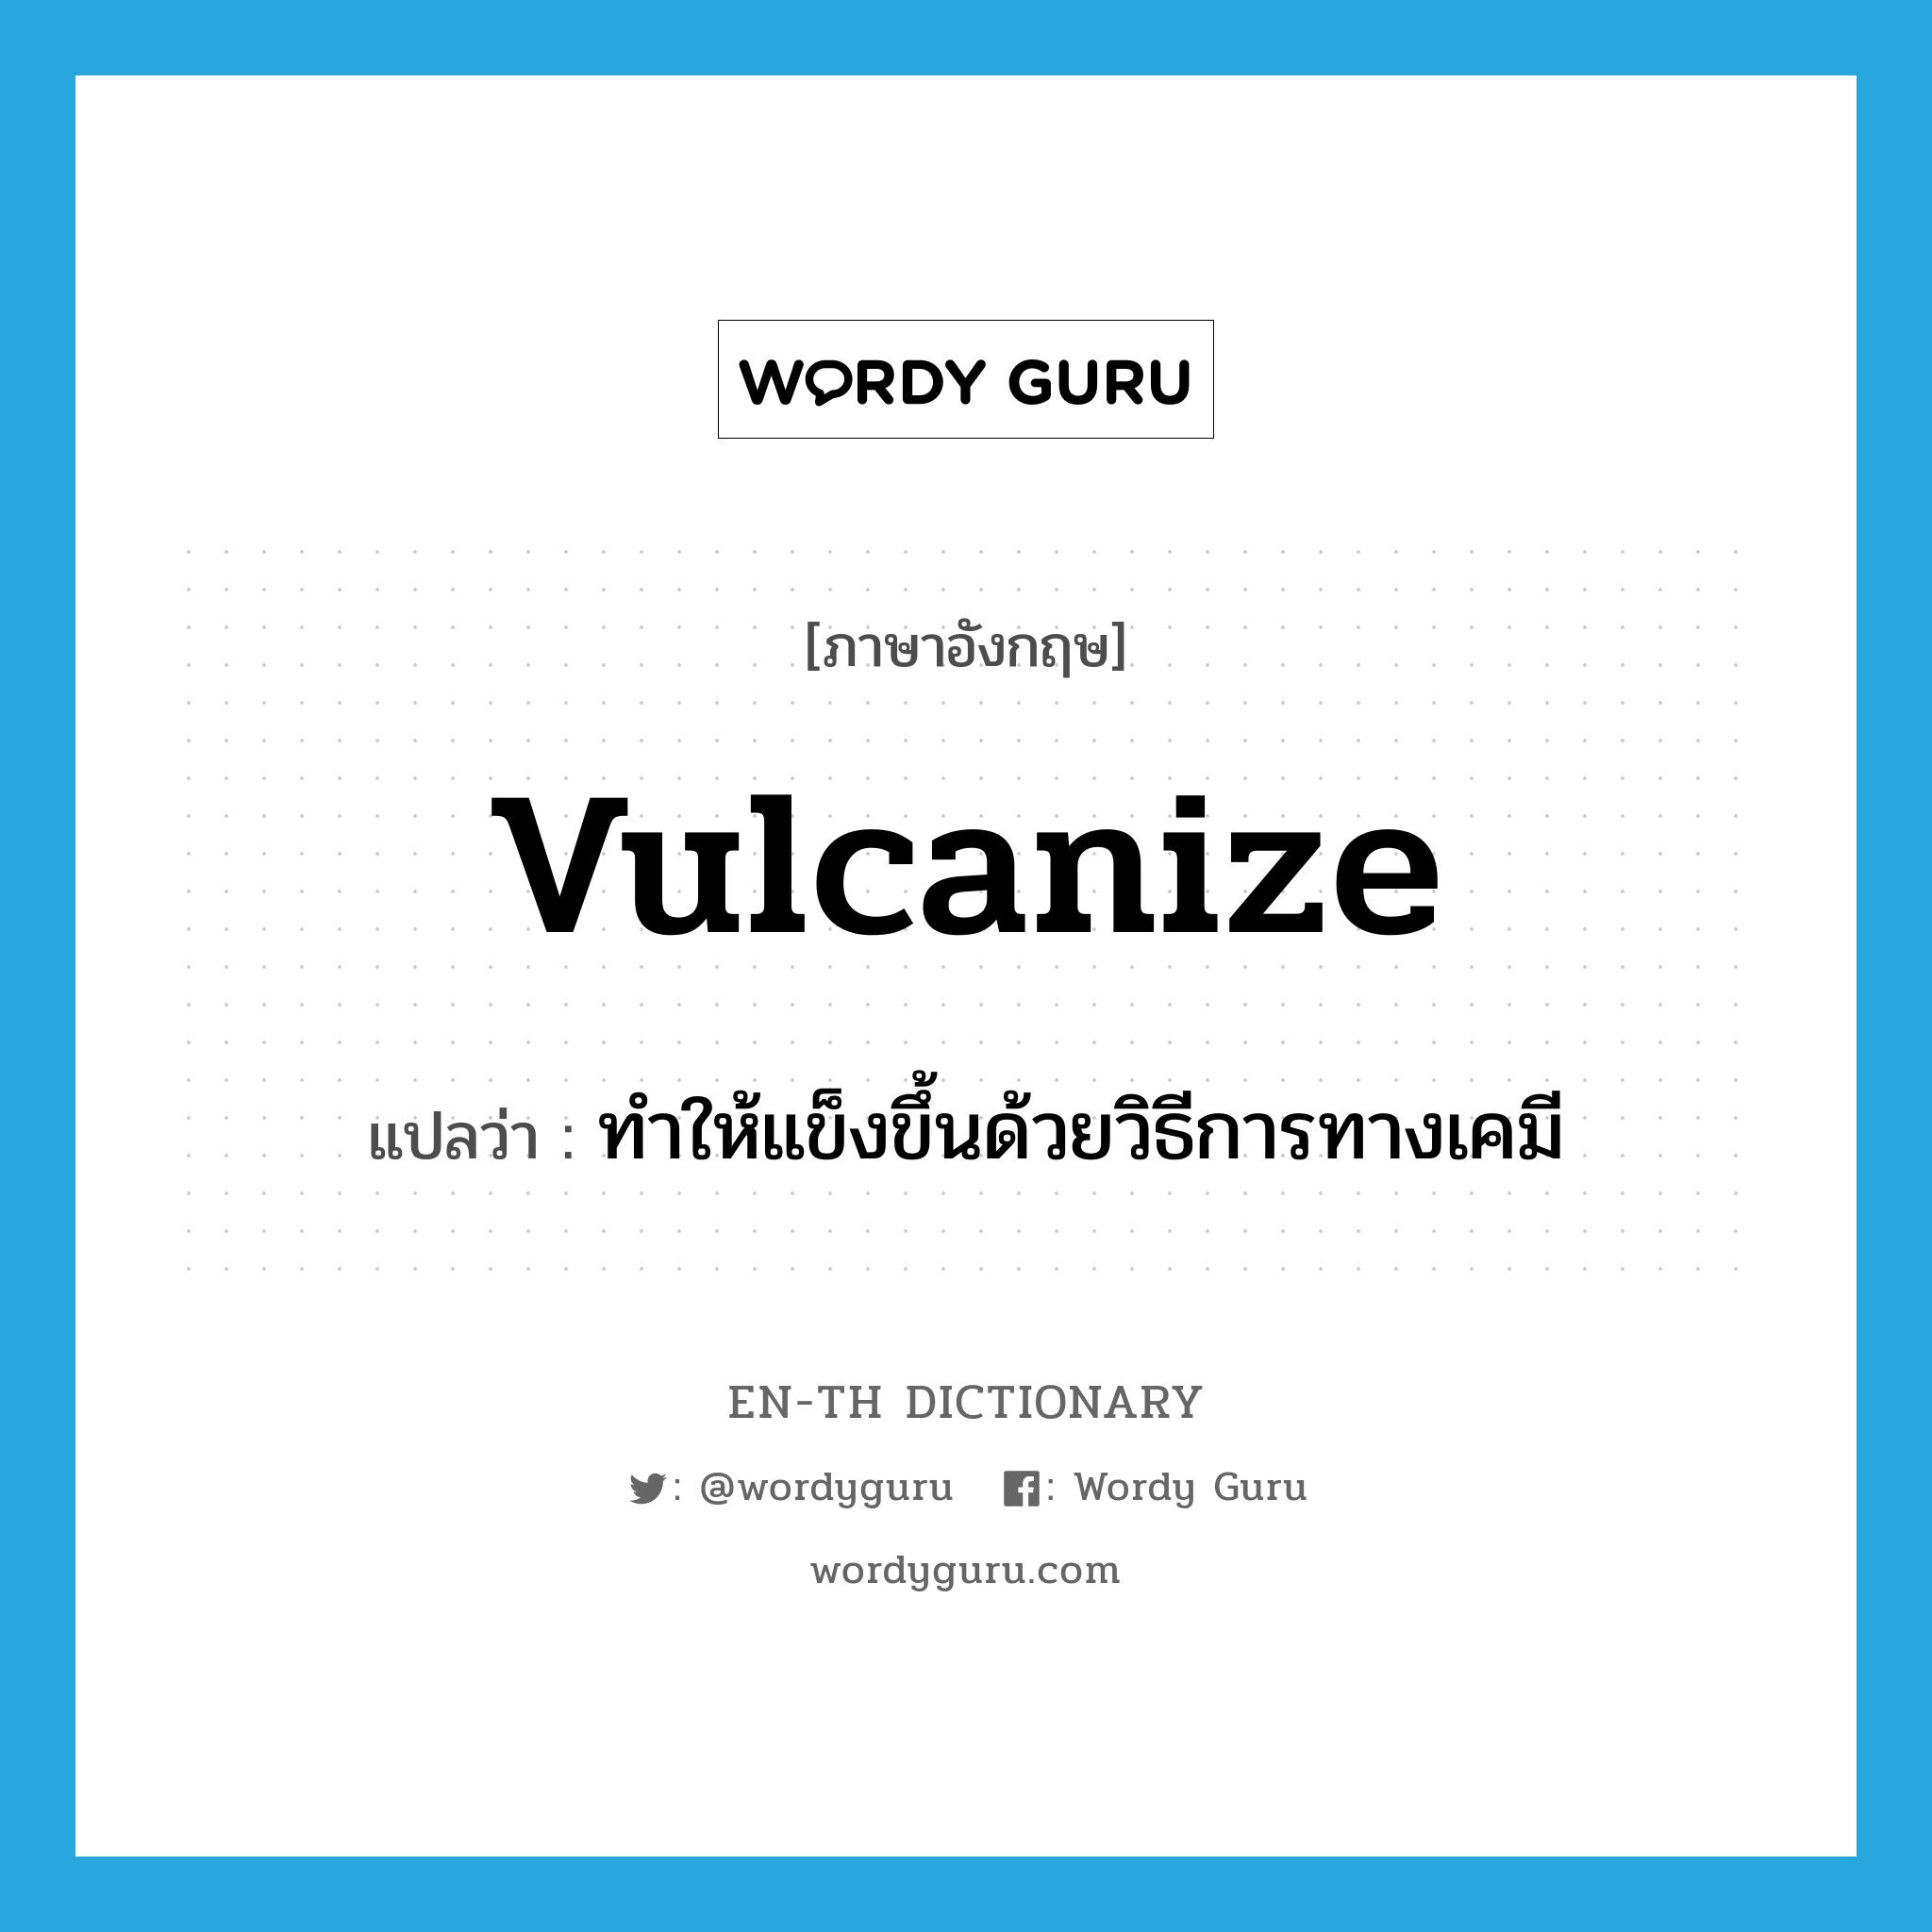 vulcanize แปลว่า?, คำศัพท์ภาษาอังกฤษ vulcanize แปลว่า ทำให้แข็งขึ้นด้วยวิธีการทางเคมี ประเภท VT หมวด VT